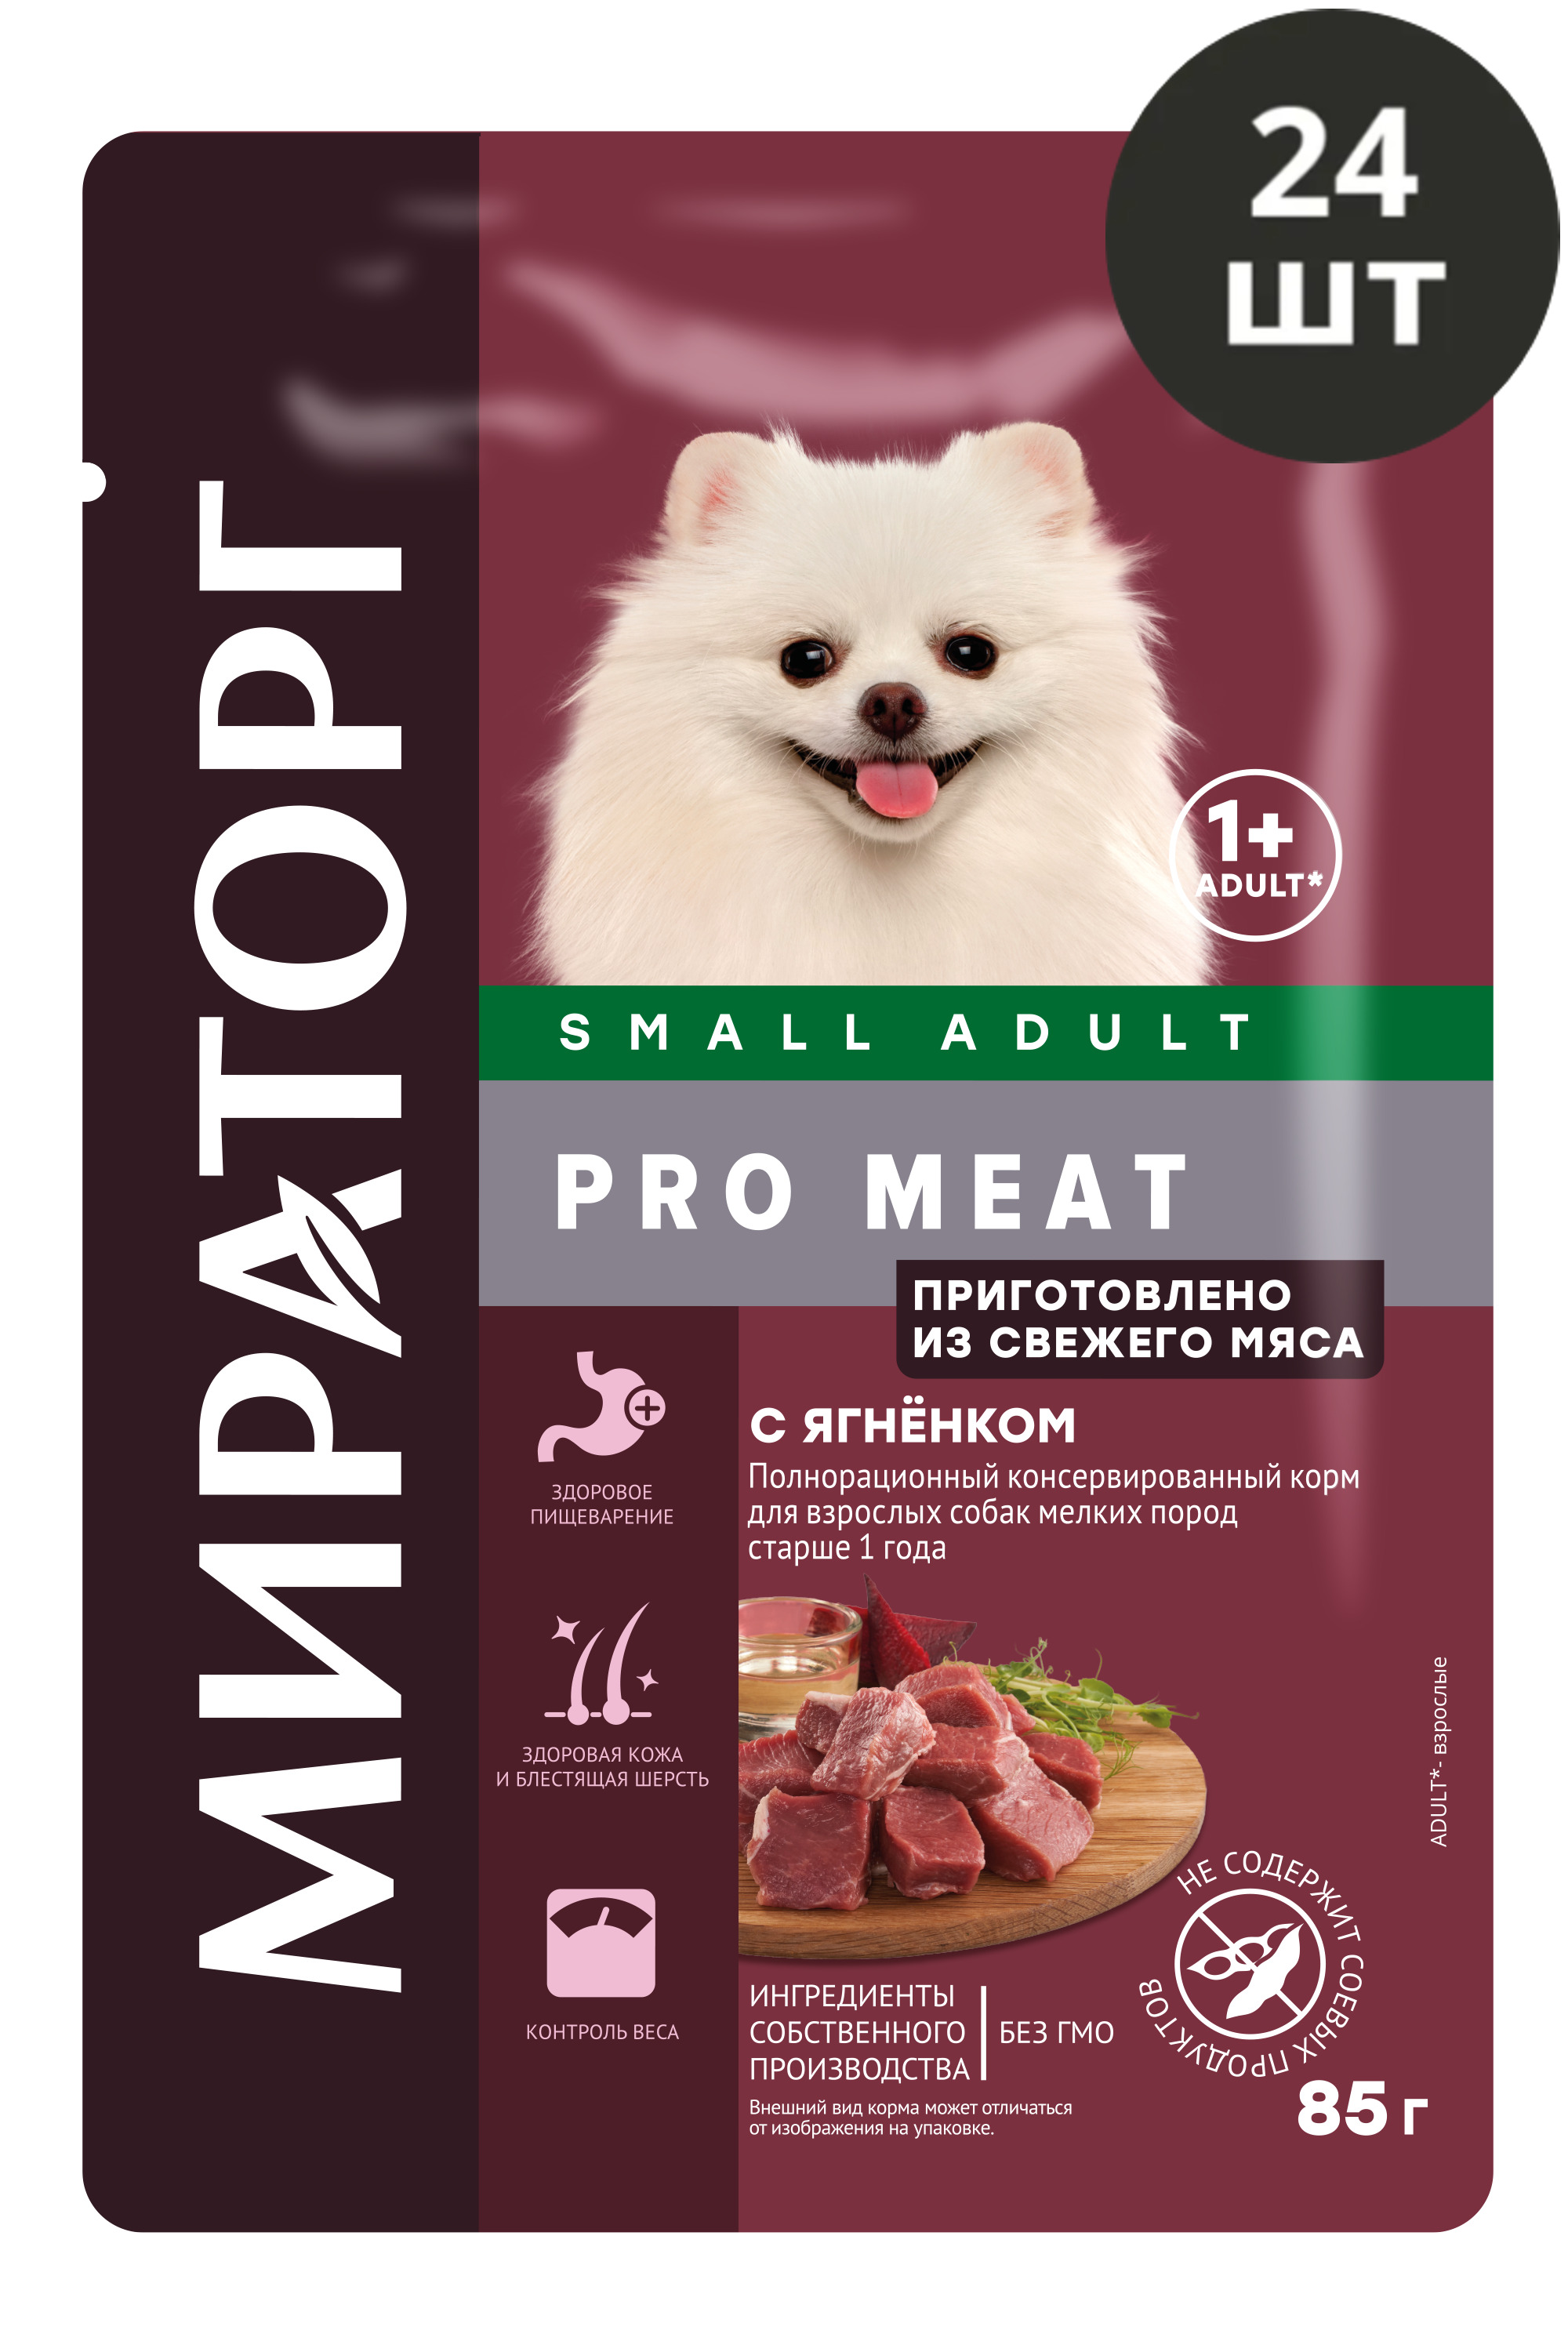 Pro meat